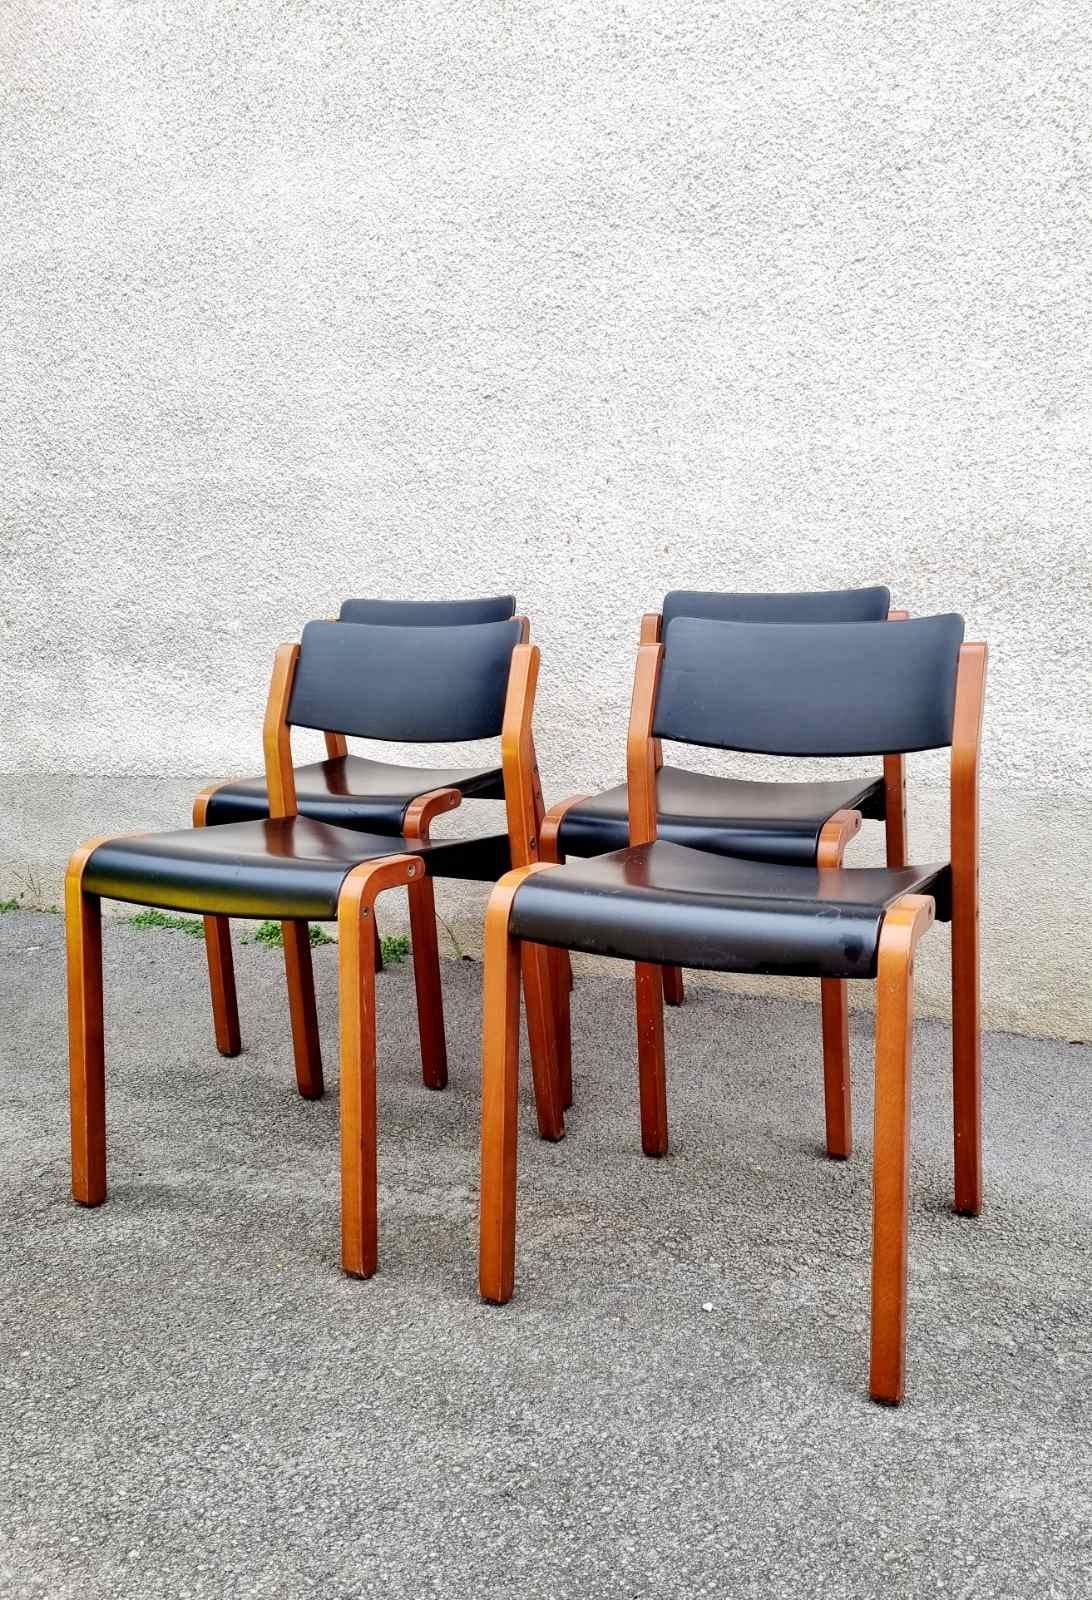 Italian Modern Gruppo Chairs, De Pas, D'Urbino & Lomazzi for Bellato, Italy 80s For Sale 4